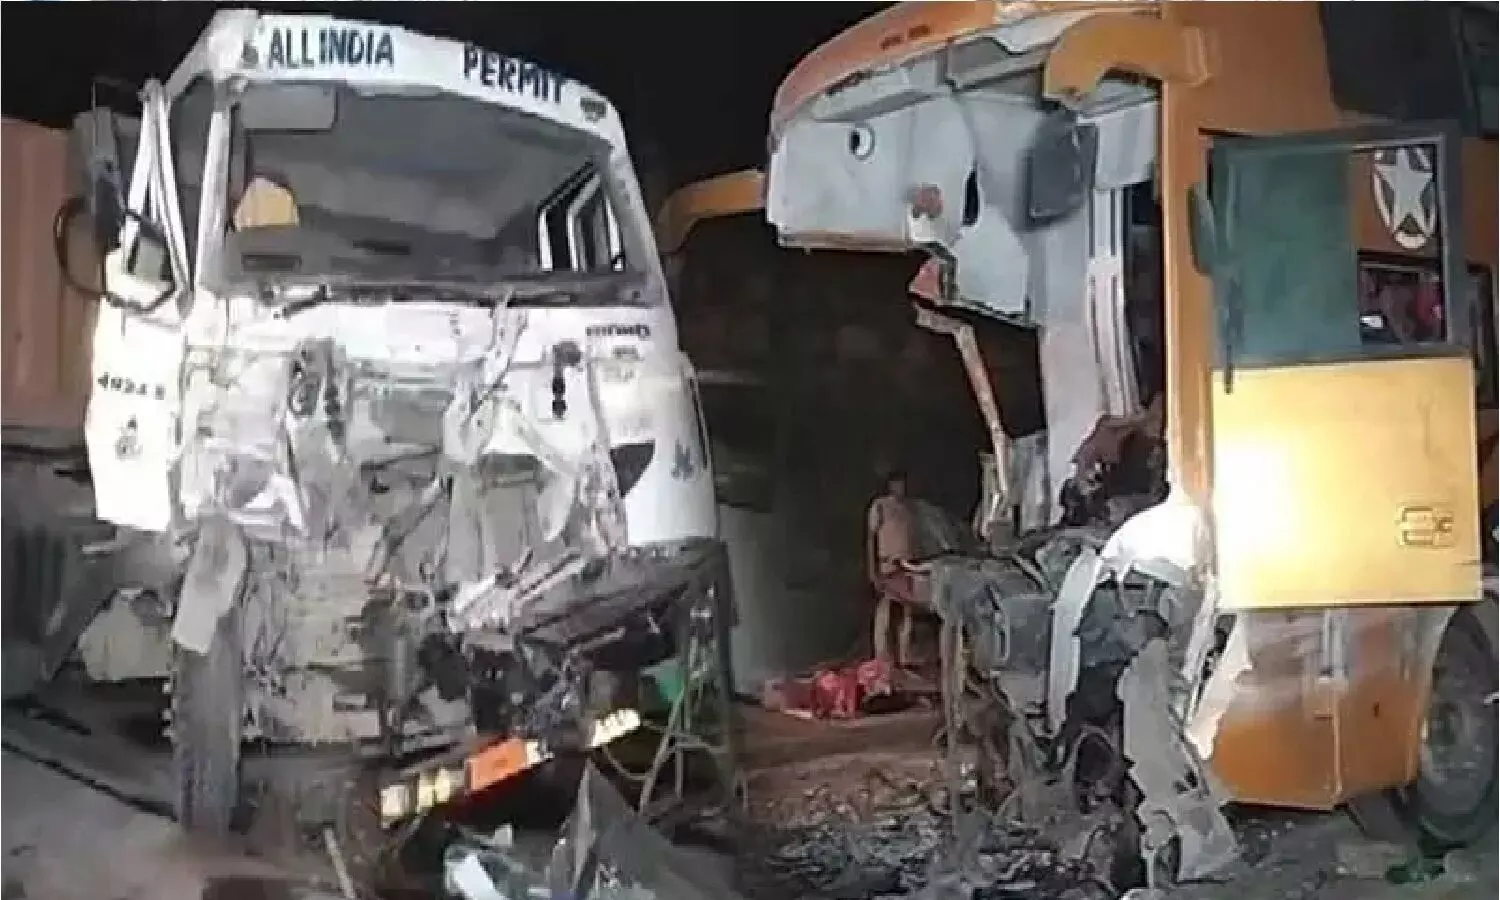 MP Rewa Bus Accident: सोहागी बस हादसे में 15 लोगों की मौत का असली जिम्मेदार कौन?